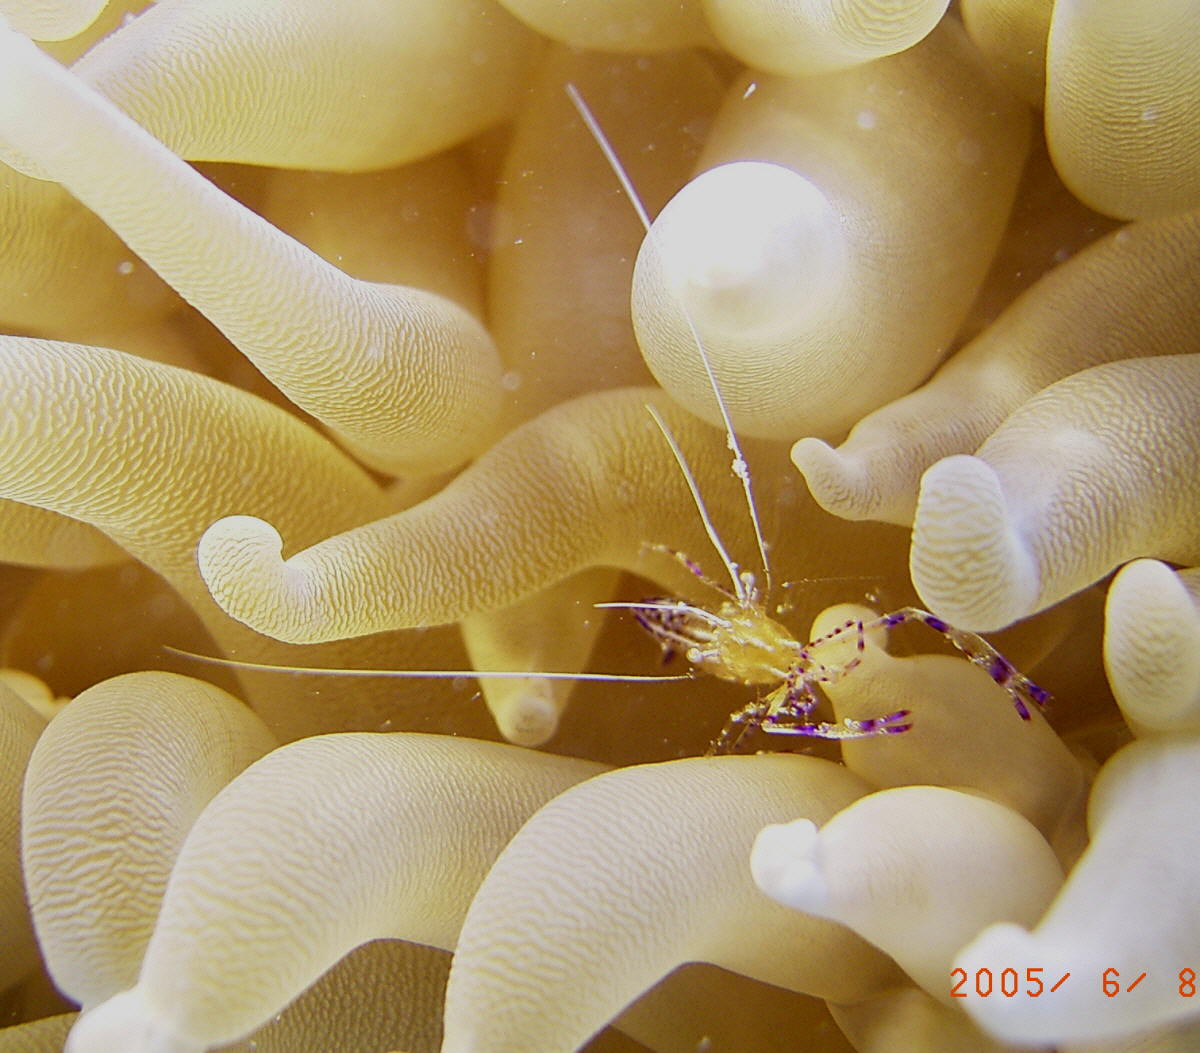 Shrimp in Anemone150kb